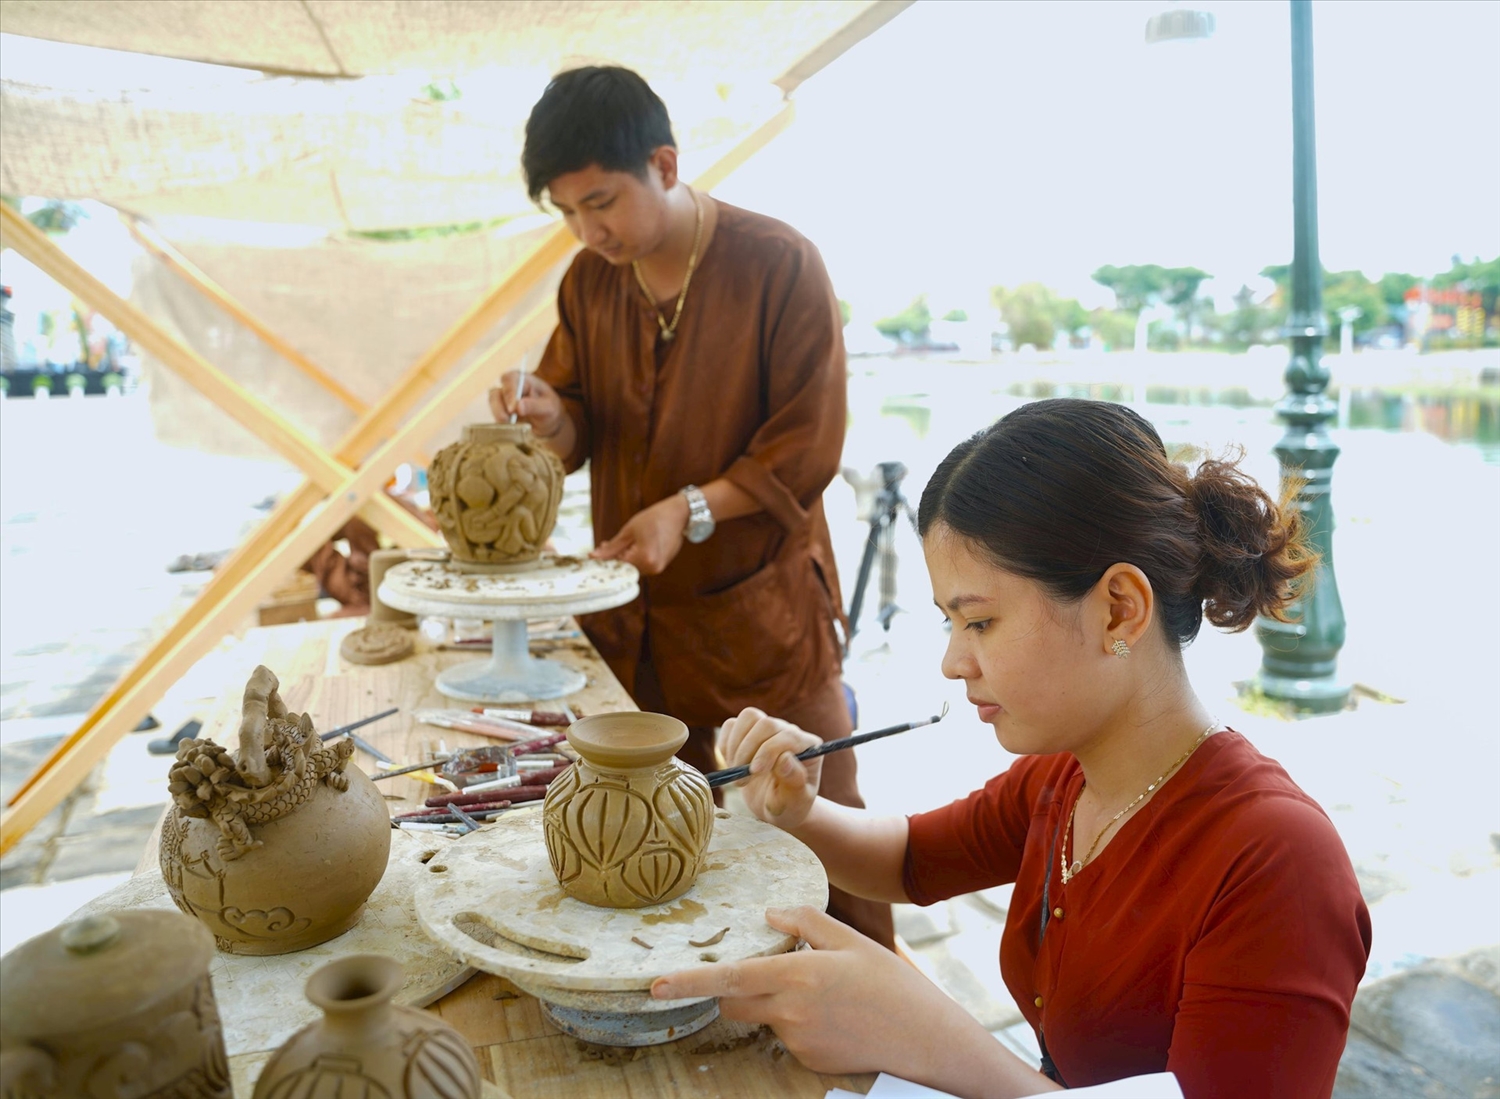  “Nét hoa nghề Hội An"" lần thứ III sẽ khai mạc vào ngày 1/6 tại làng mộc Kim Bồng